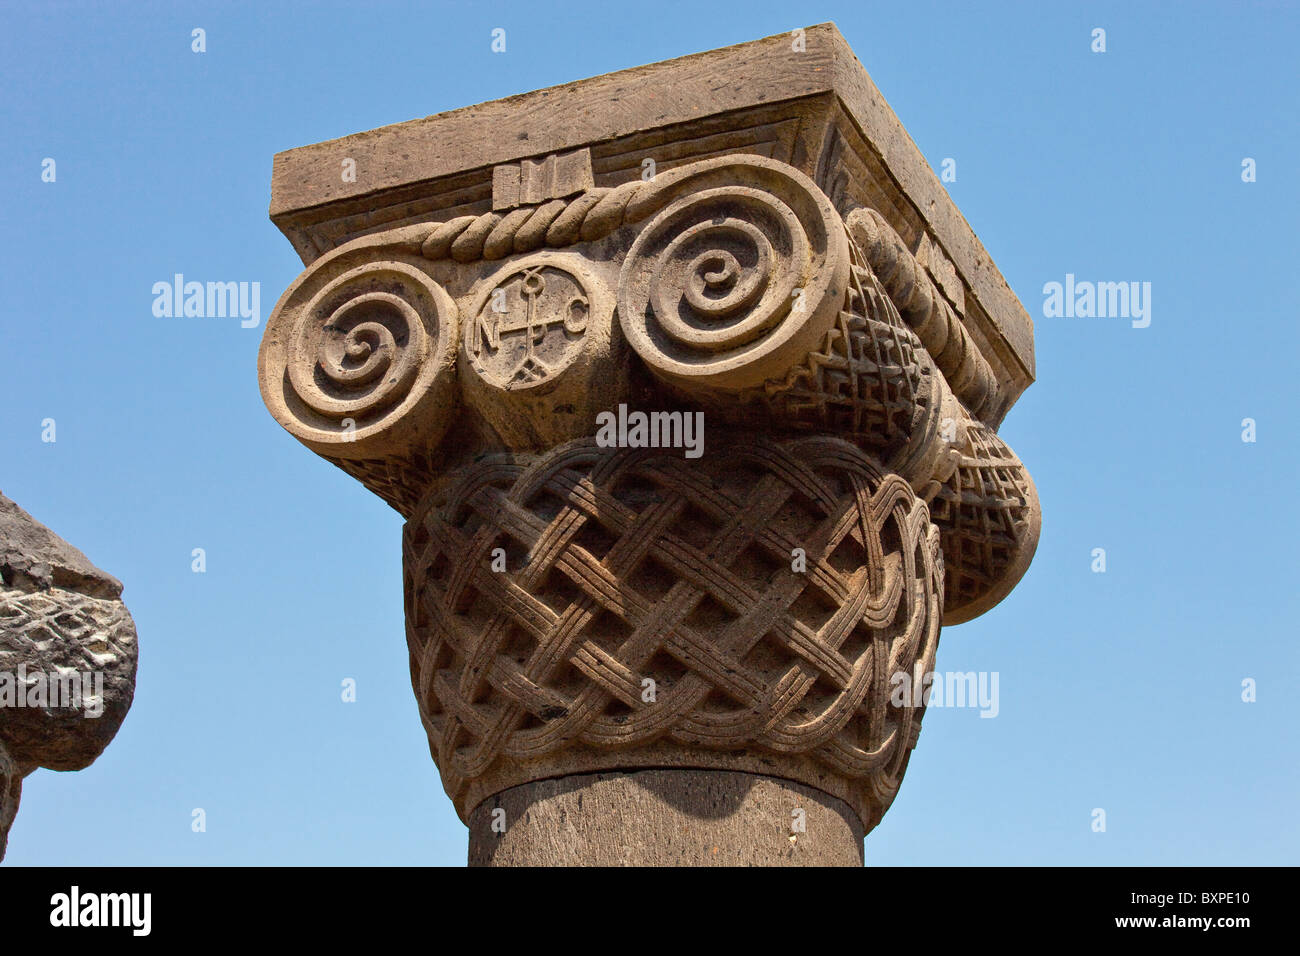 Capital détaillées, des ruines de la cathédrale de Zvarnots près de Yerevan Arménie Banque D'Images